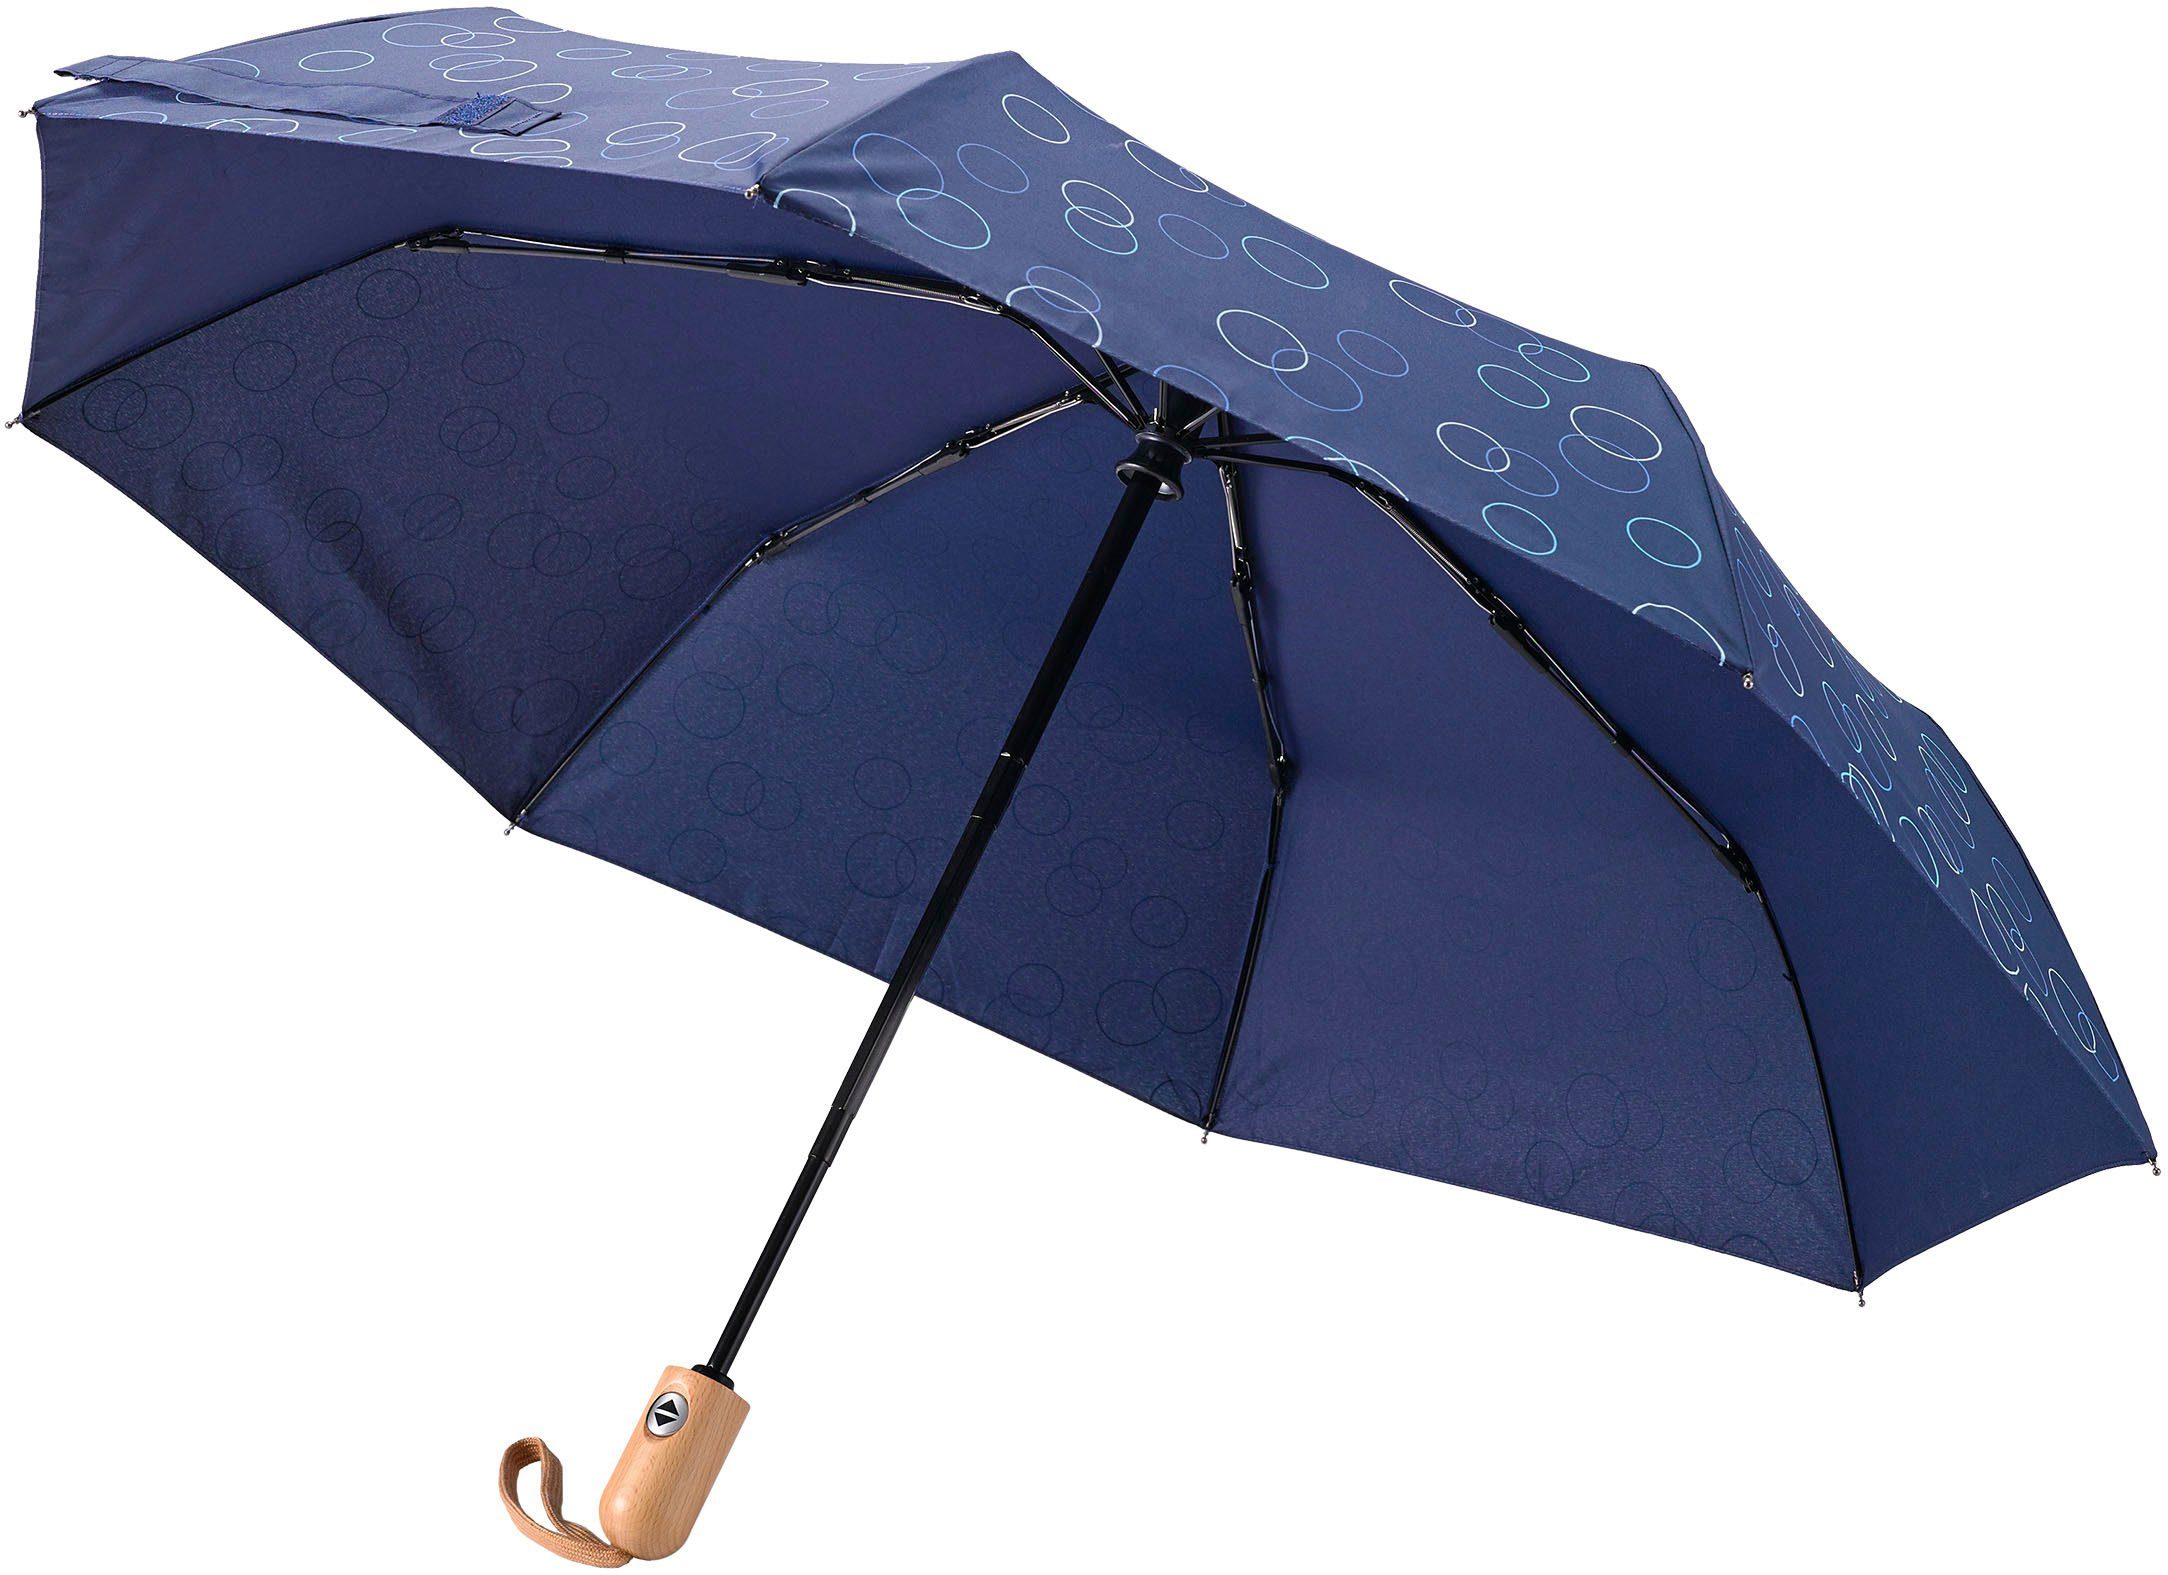 Umwelt-Taschenschirm, blau marine, Taschenregenschirm Kreise EuroSCHIRM®